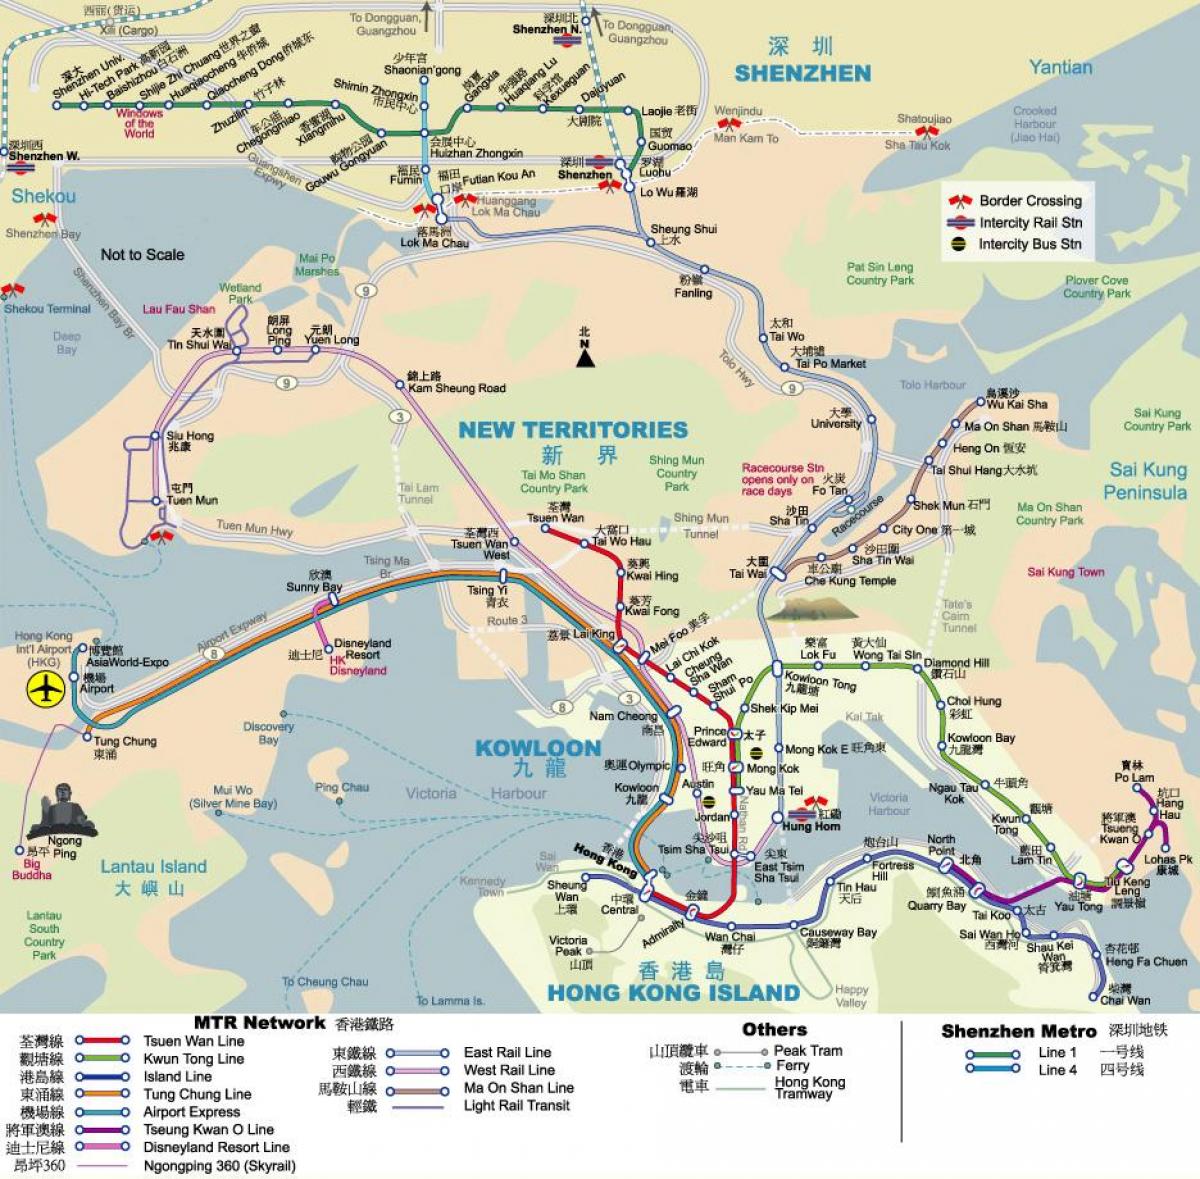 MTR kort over Hong Kong